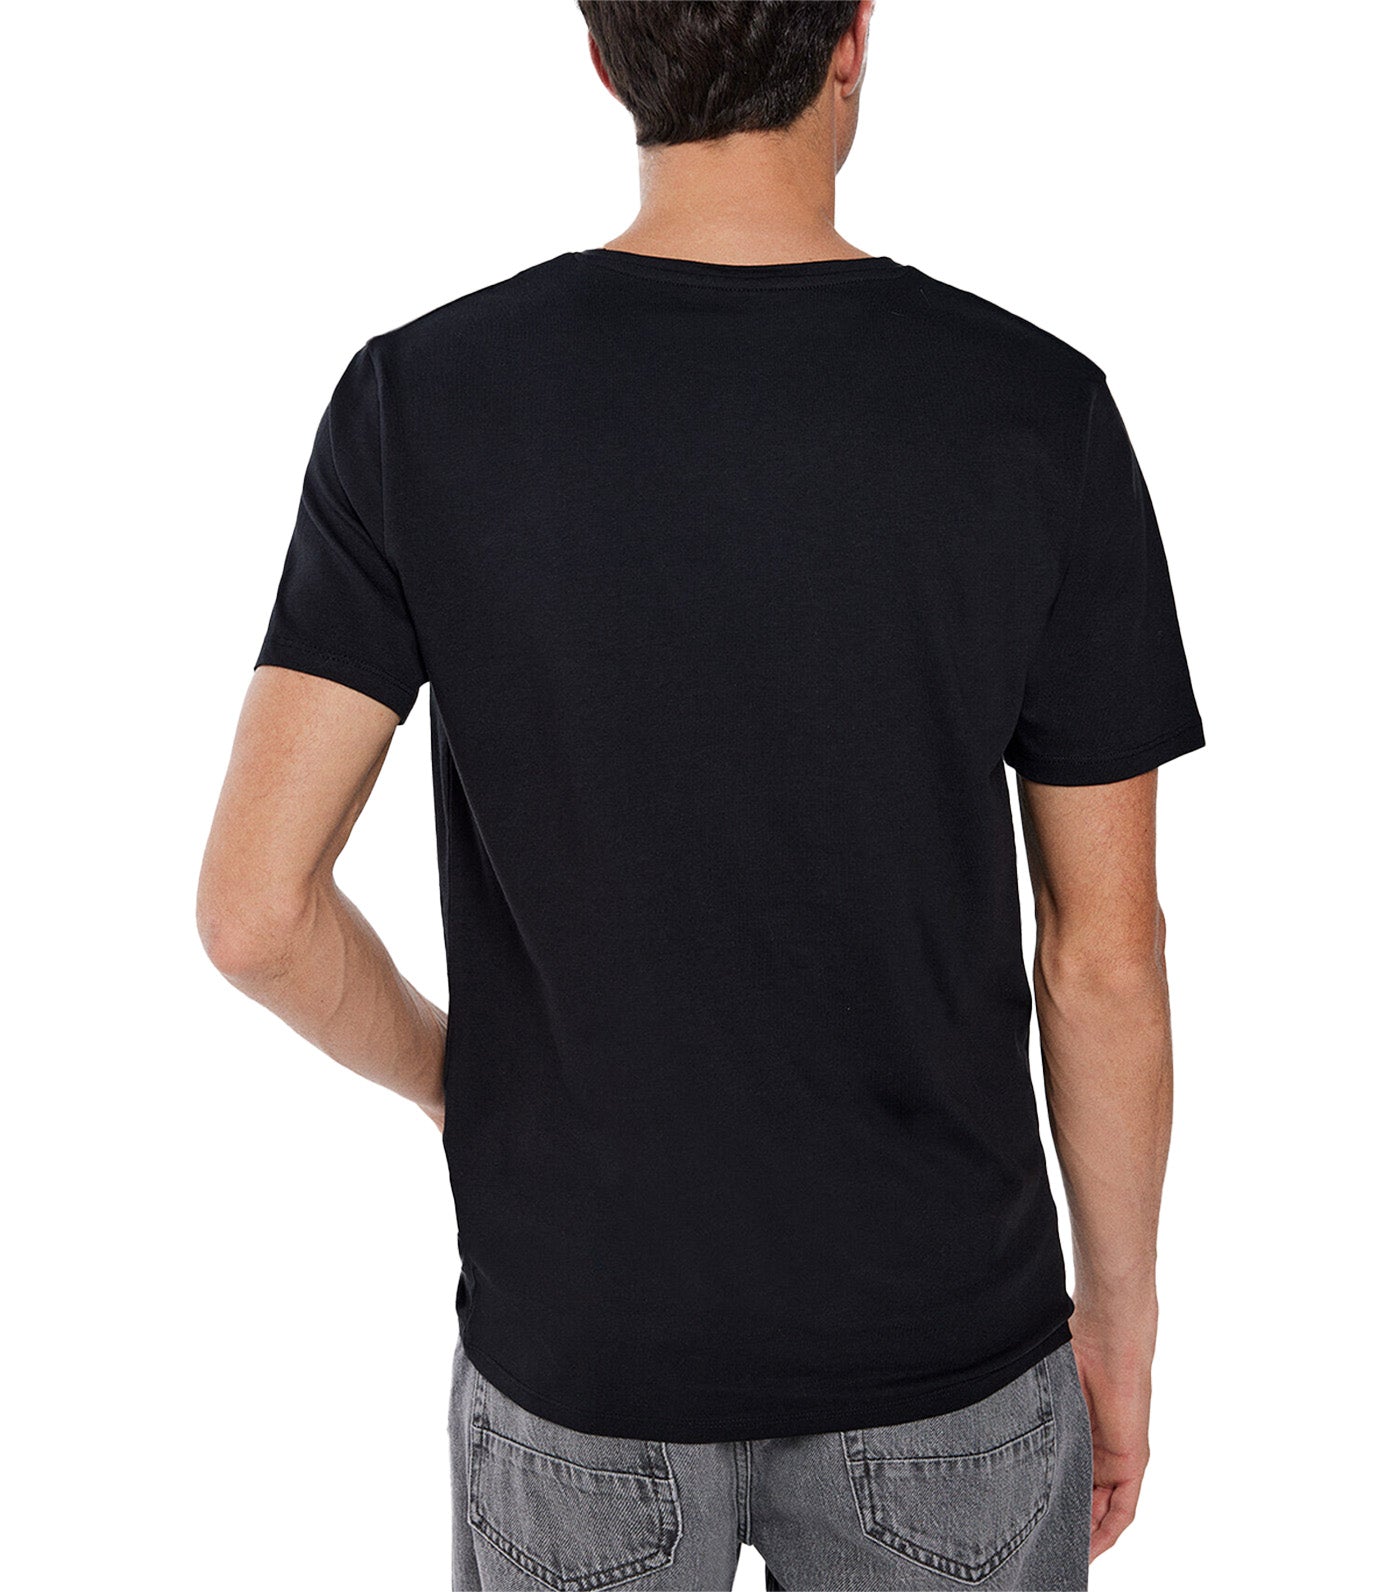 Elastane V-Neck T-Shirt Black